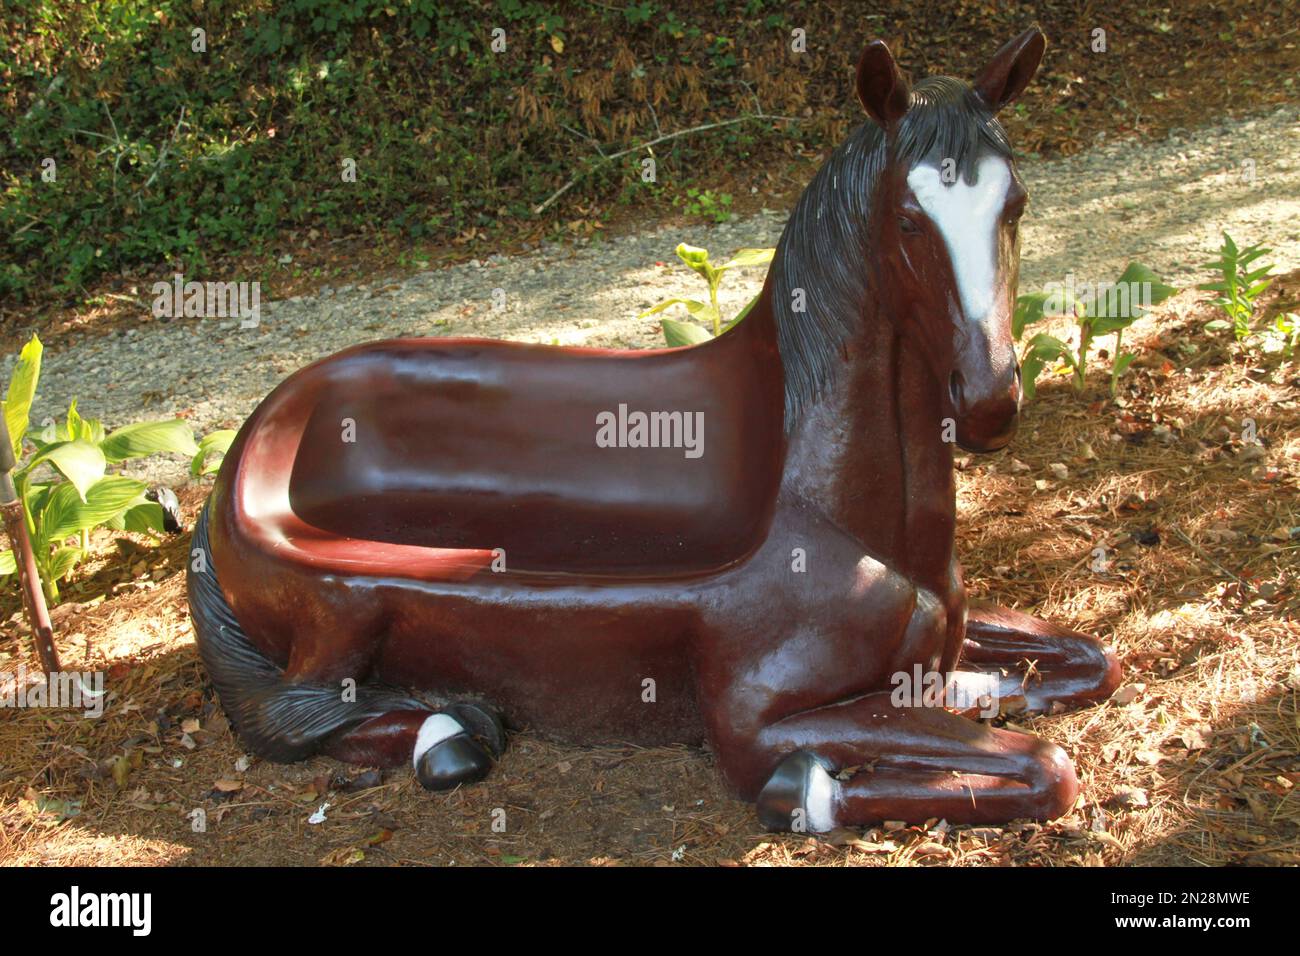 Panchina in un parco a forma di cavallo Foto Stock